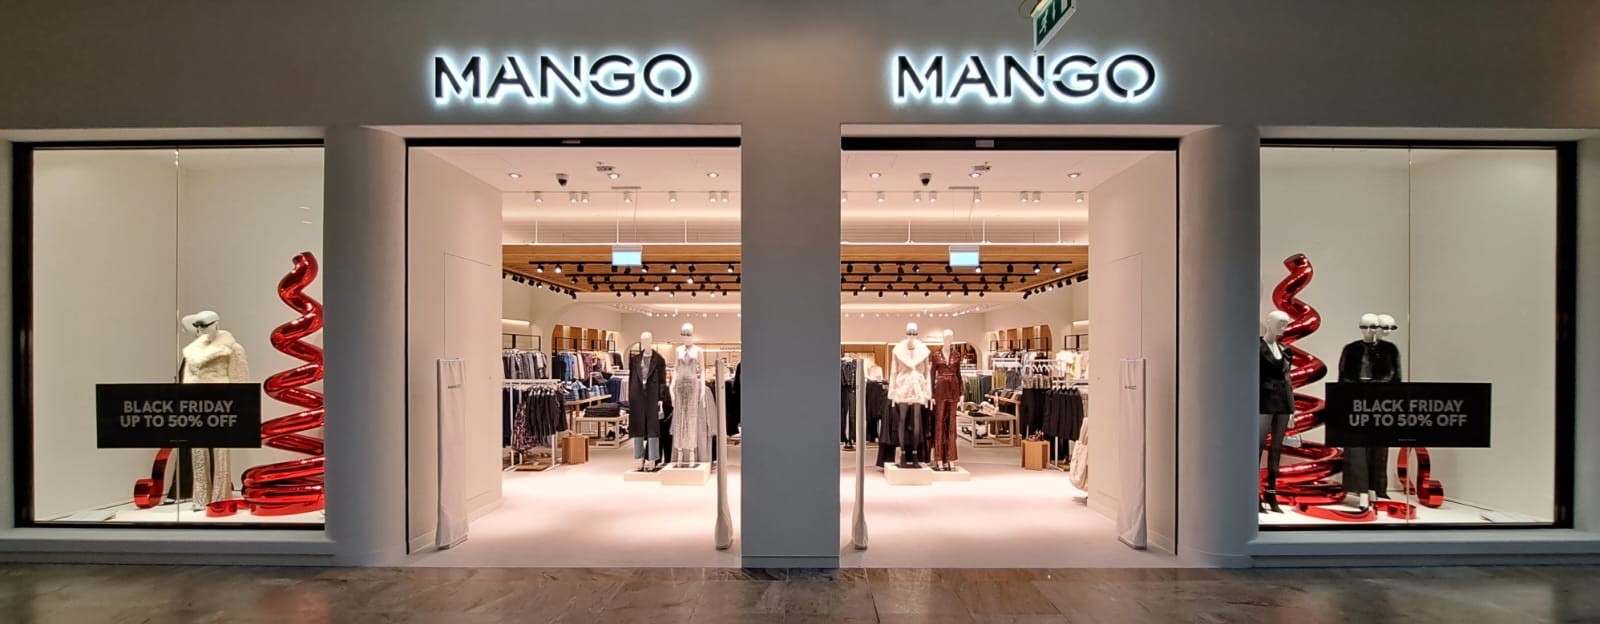 Mango expande su presencia en el Reino Unido con una tienda en el centro comercial Trafford Centre de Manchester